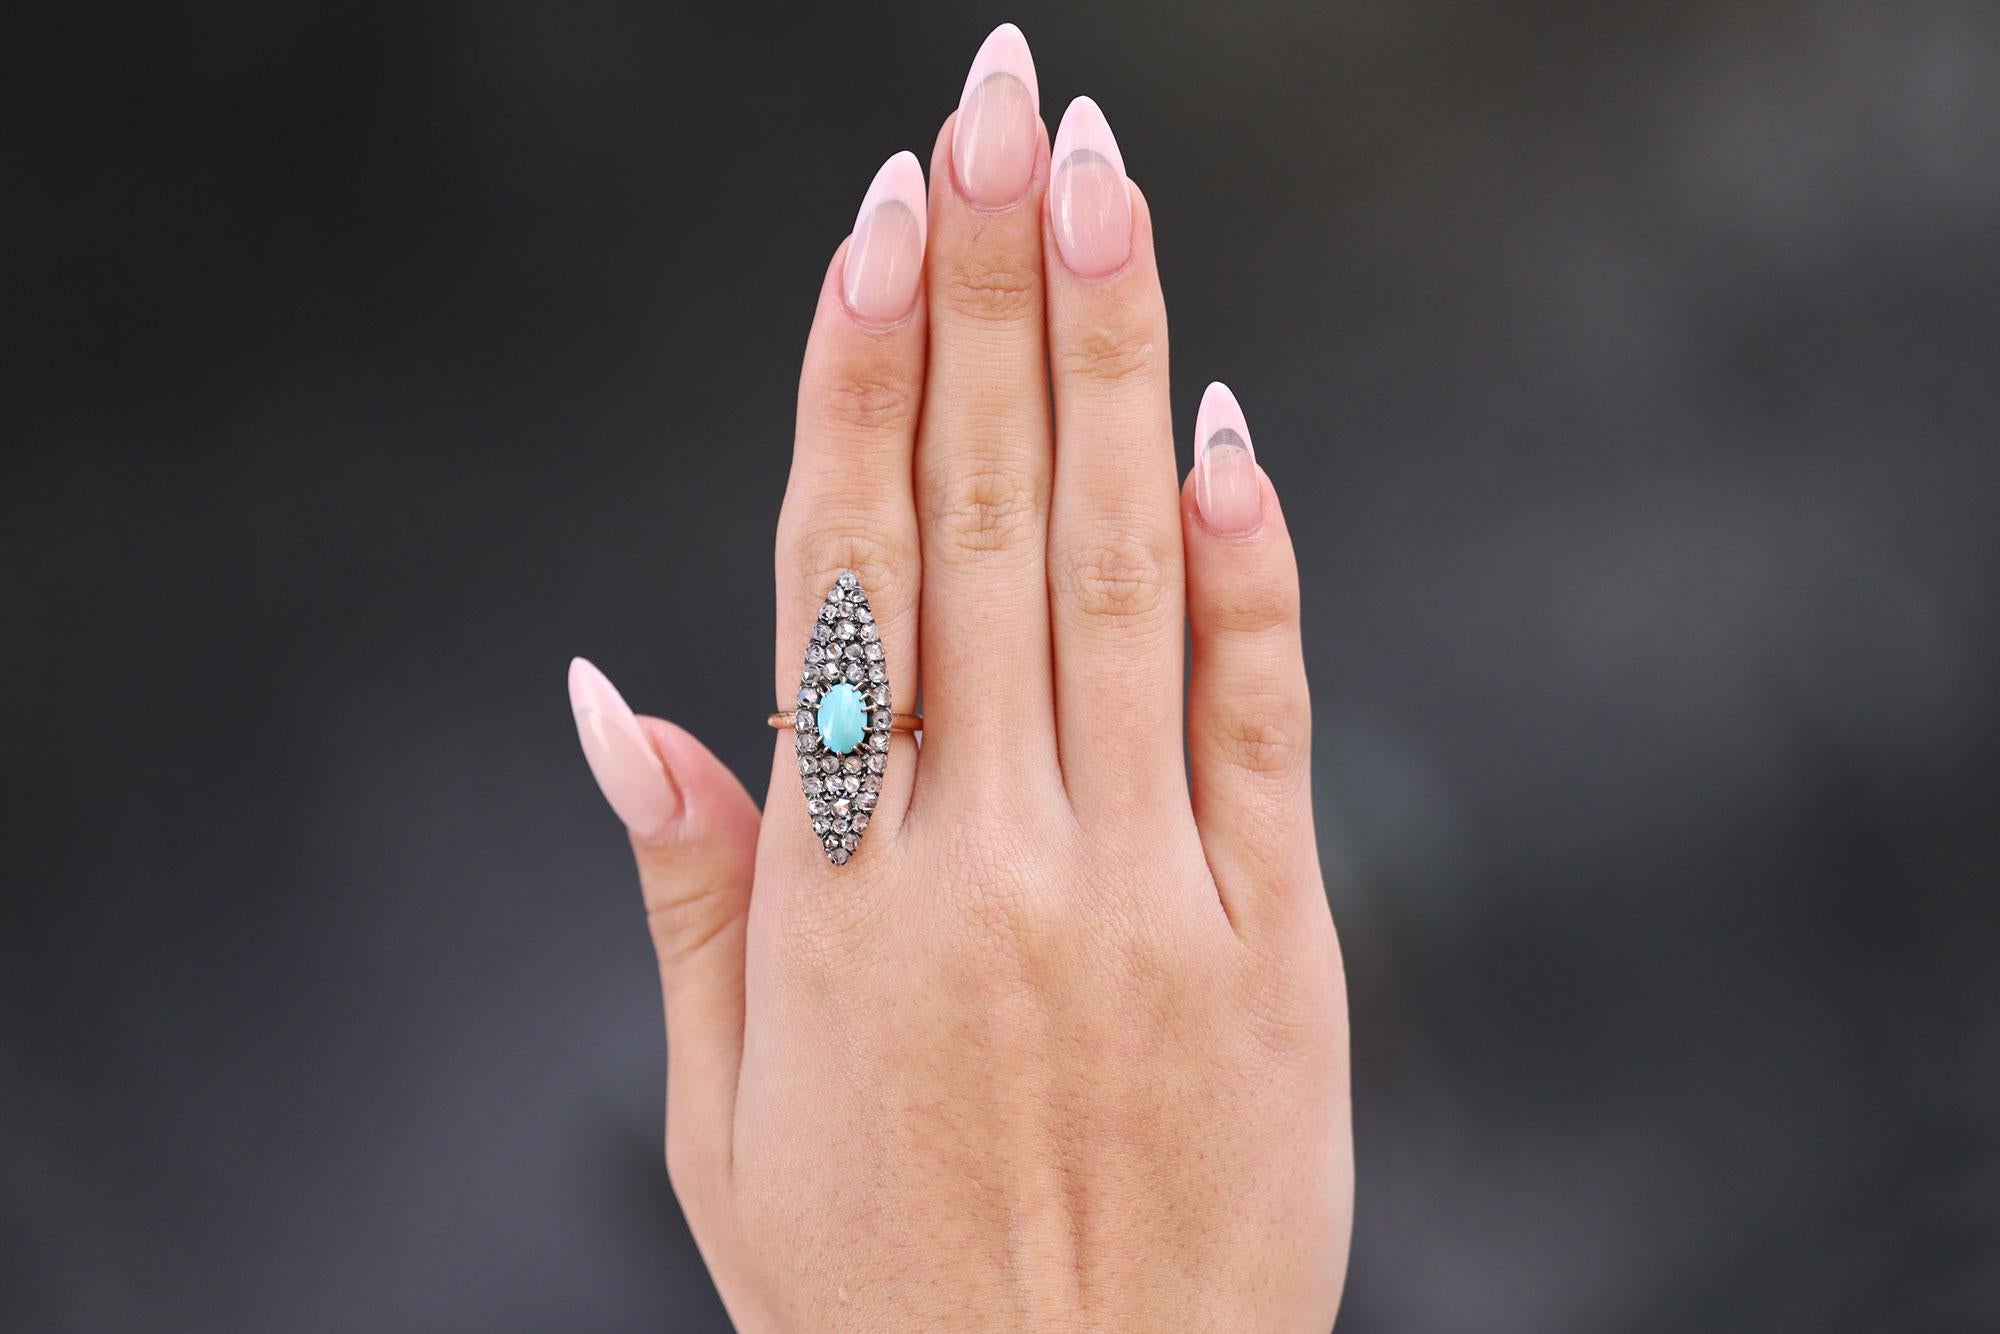 Une somptueuse bague victorienne à navette en diamant et turquoise, longue, élégante et svelte. Ce bijou de la fin du 19e siècle est plein de charme. Il est centré sur une turquoise persane d'une couleur parfaite et entouré de 40 diamants roses